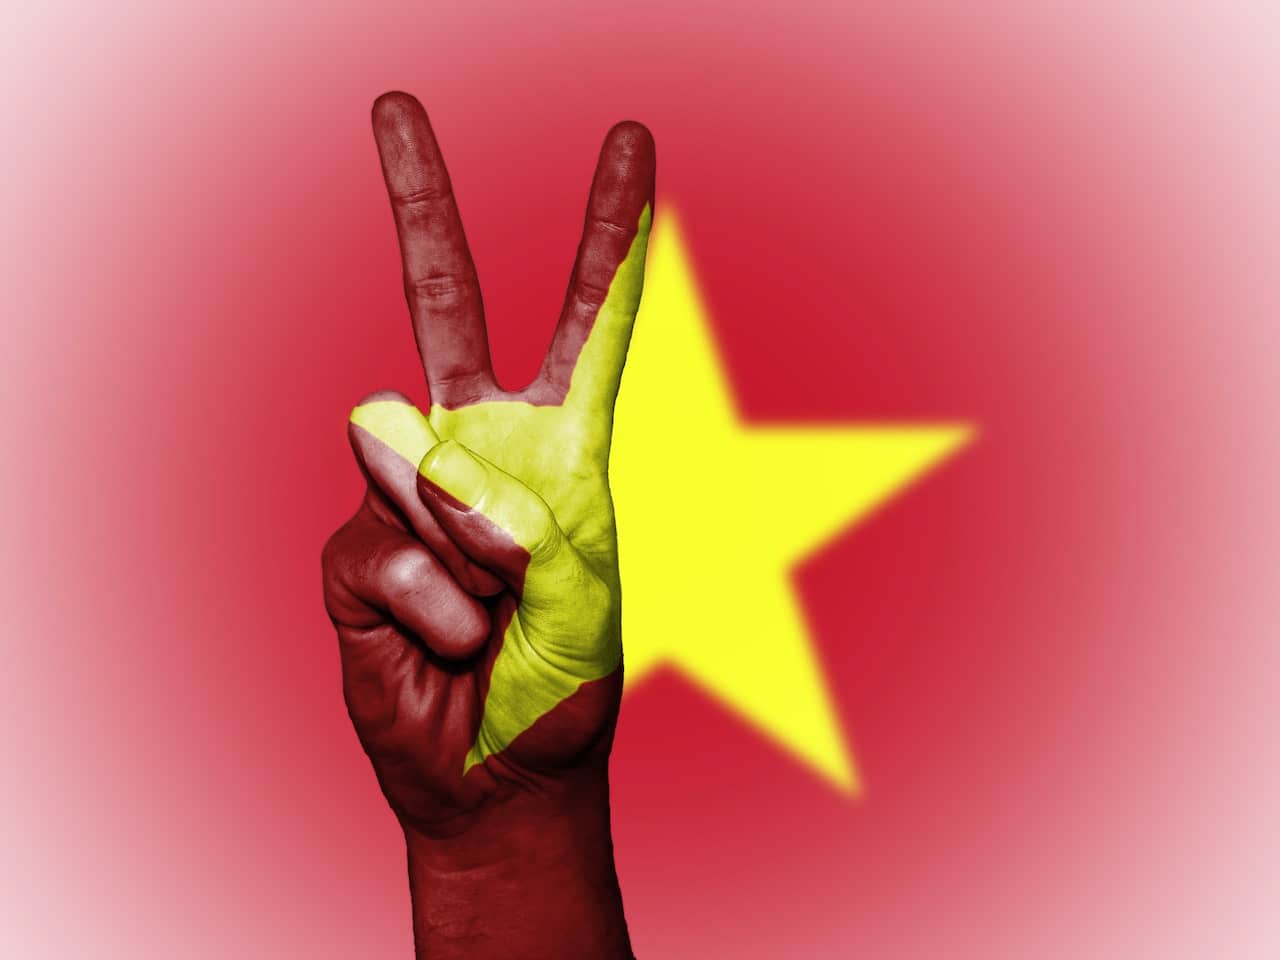 vietnam-pestle-analysis